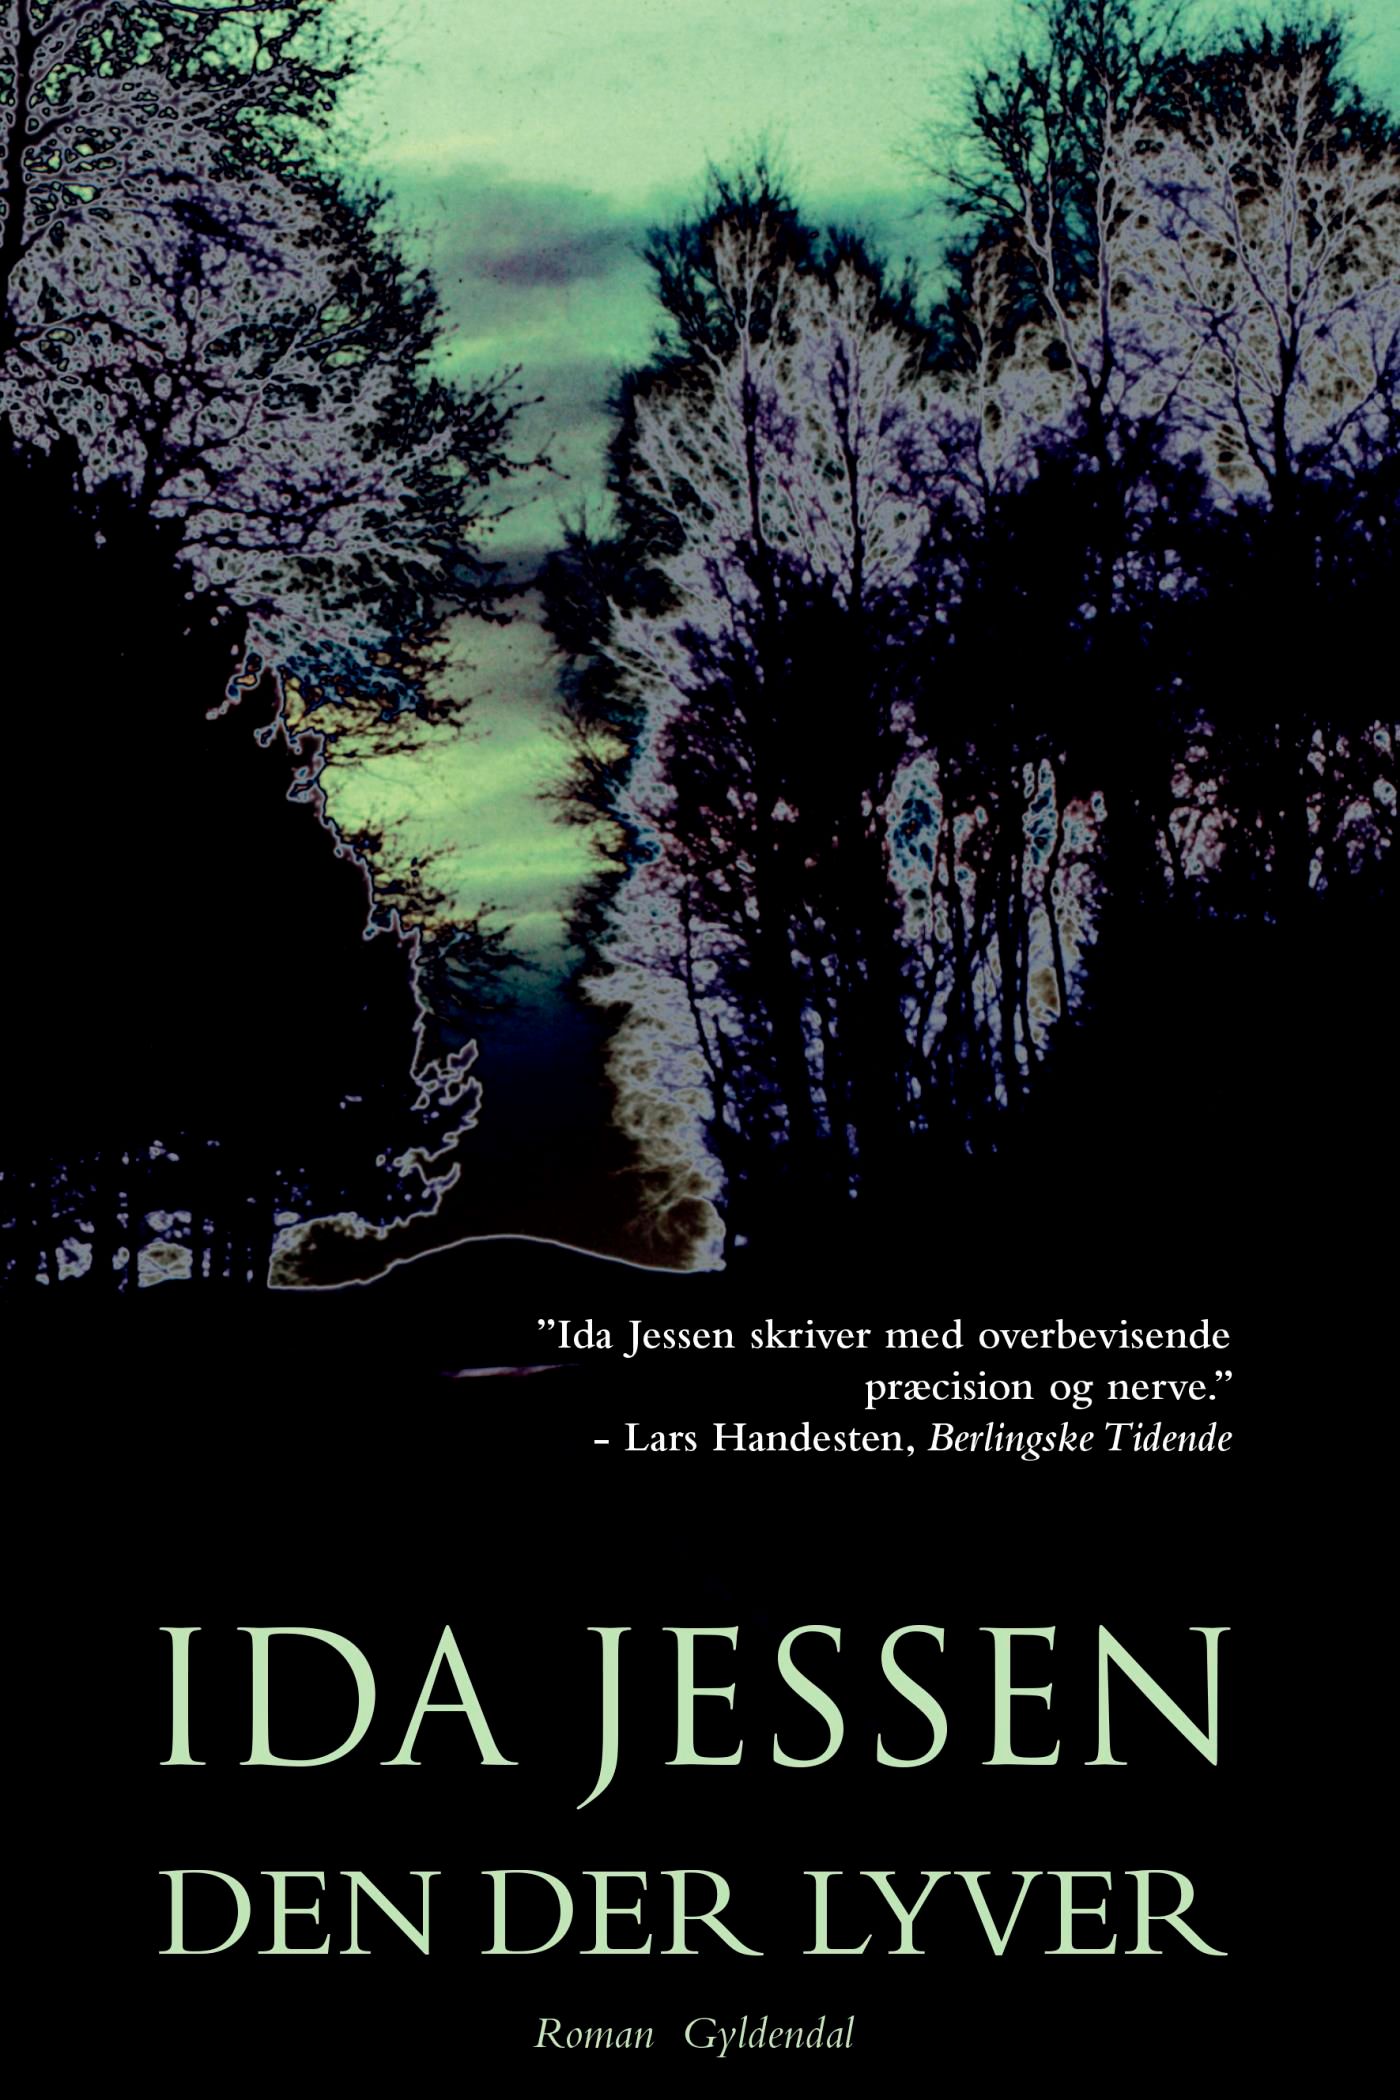 Den der lyver, eBook by Ida Jessen